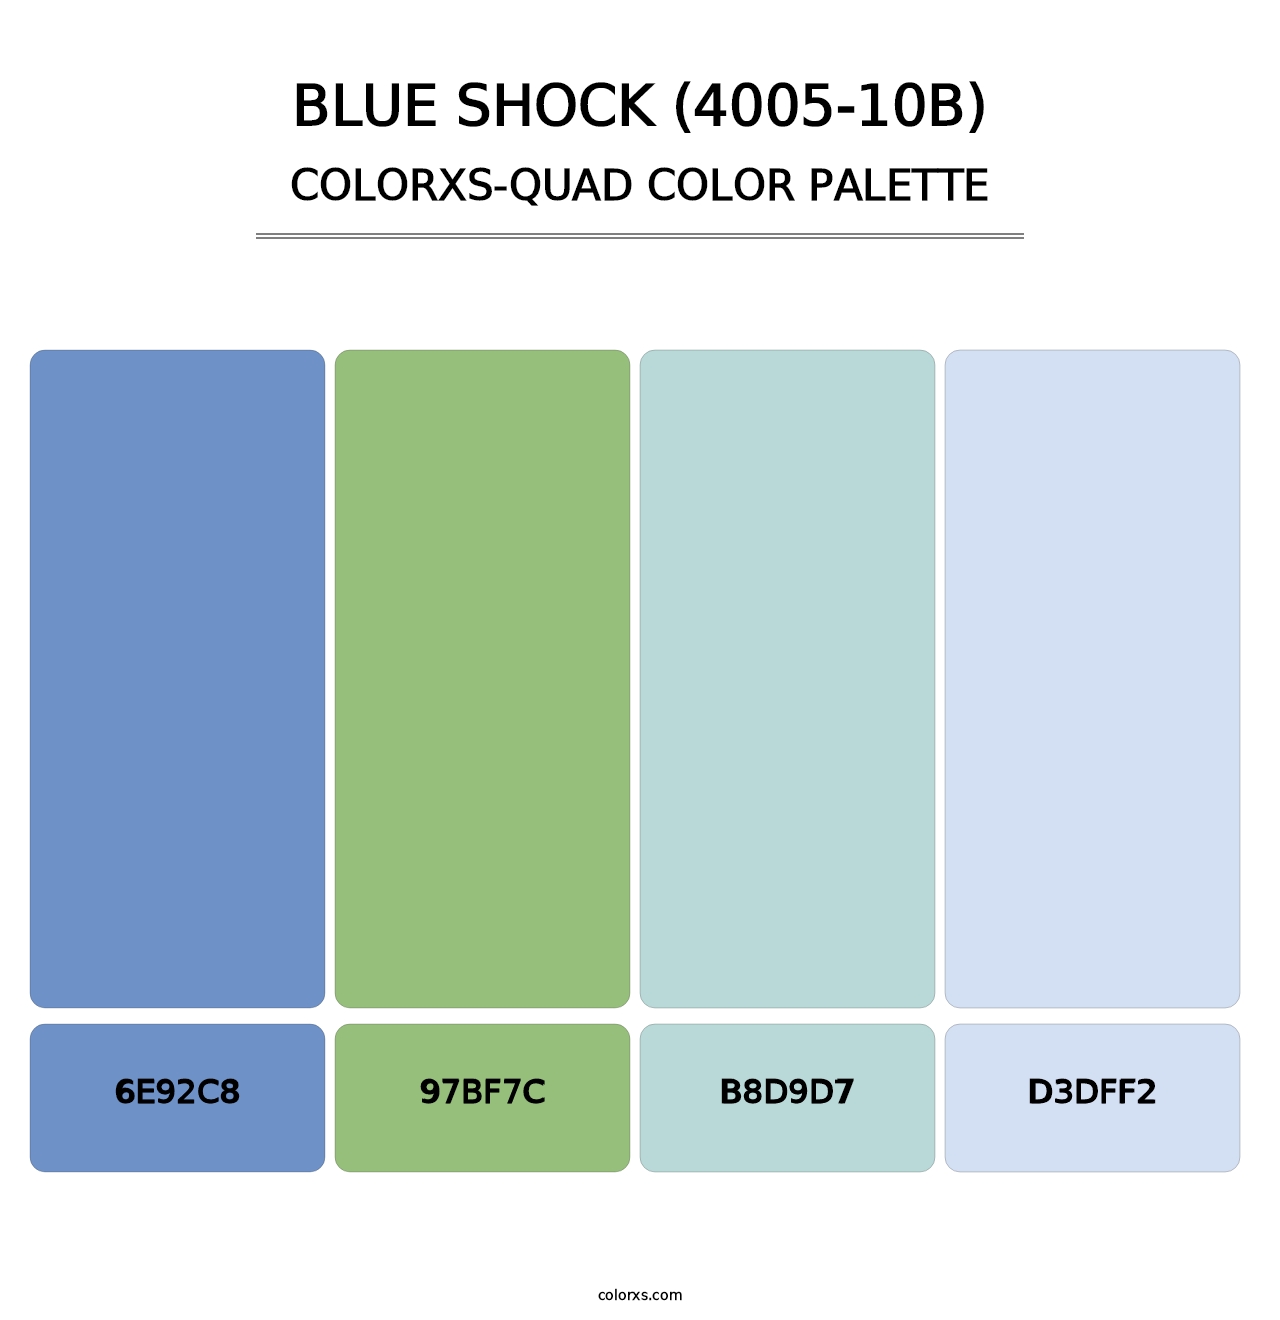 Blue Shock (4005-10B) - Colorxs Quad Palette